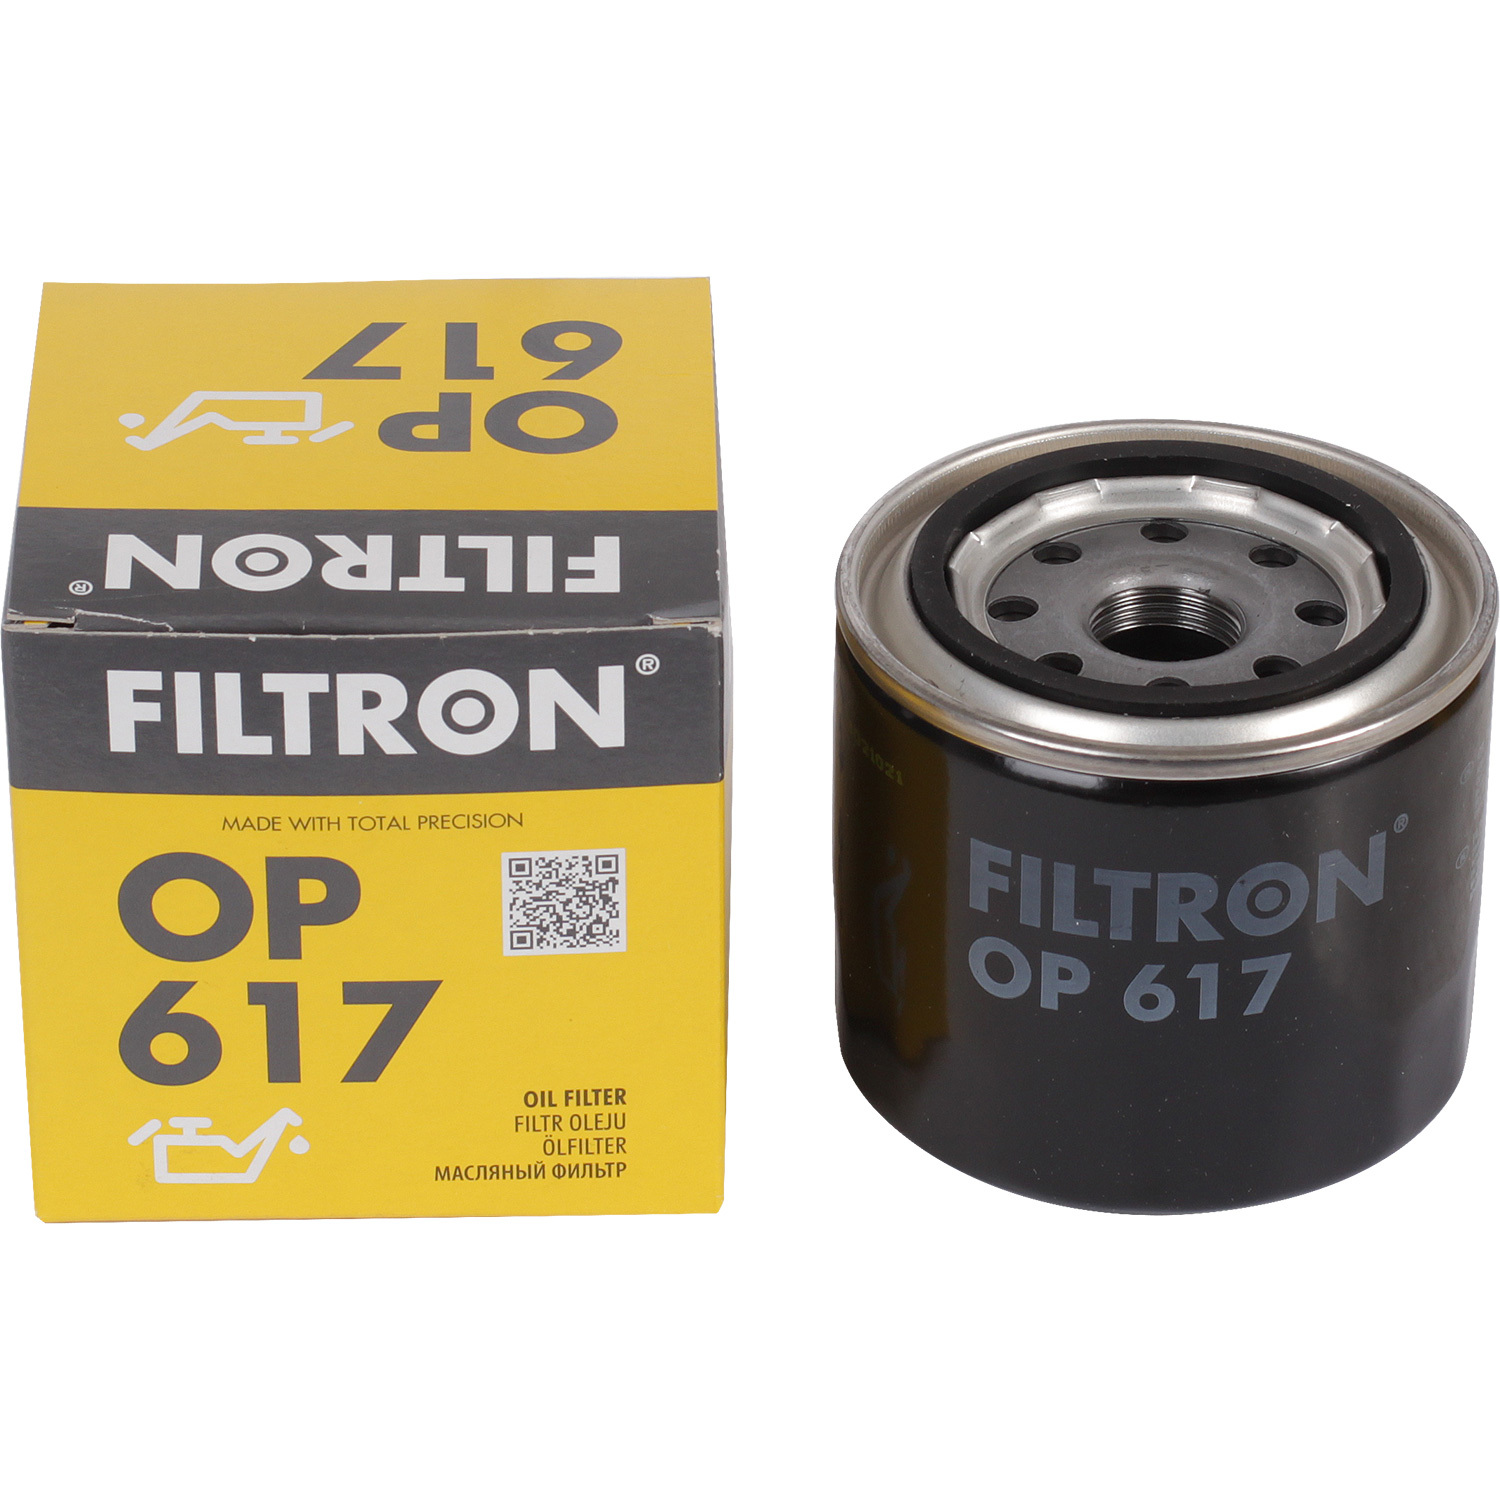 фильтры filtron фильтр масляный filtron op5662 Фильтры Filtron Фильтр масляный Filtron OP617